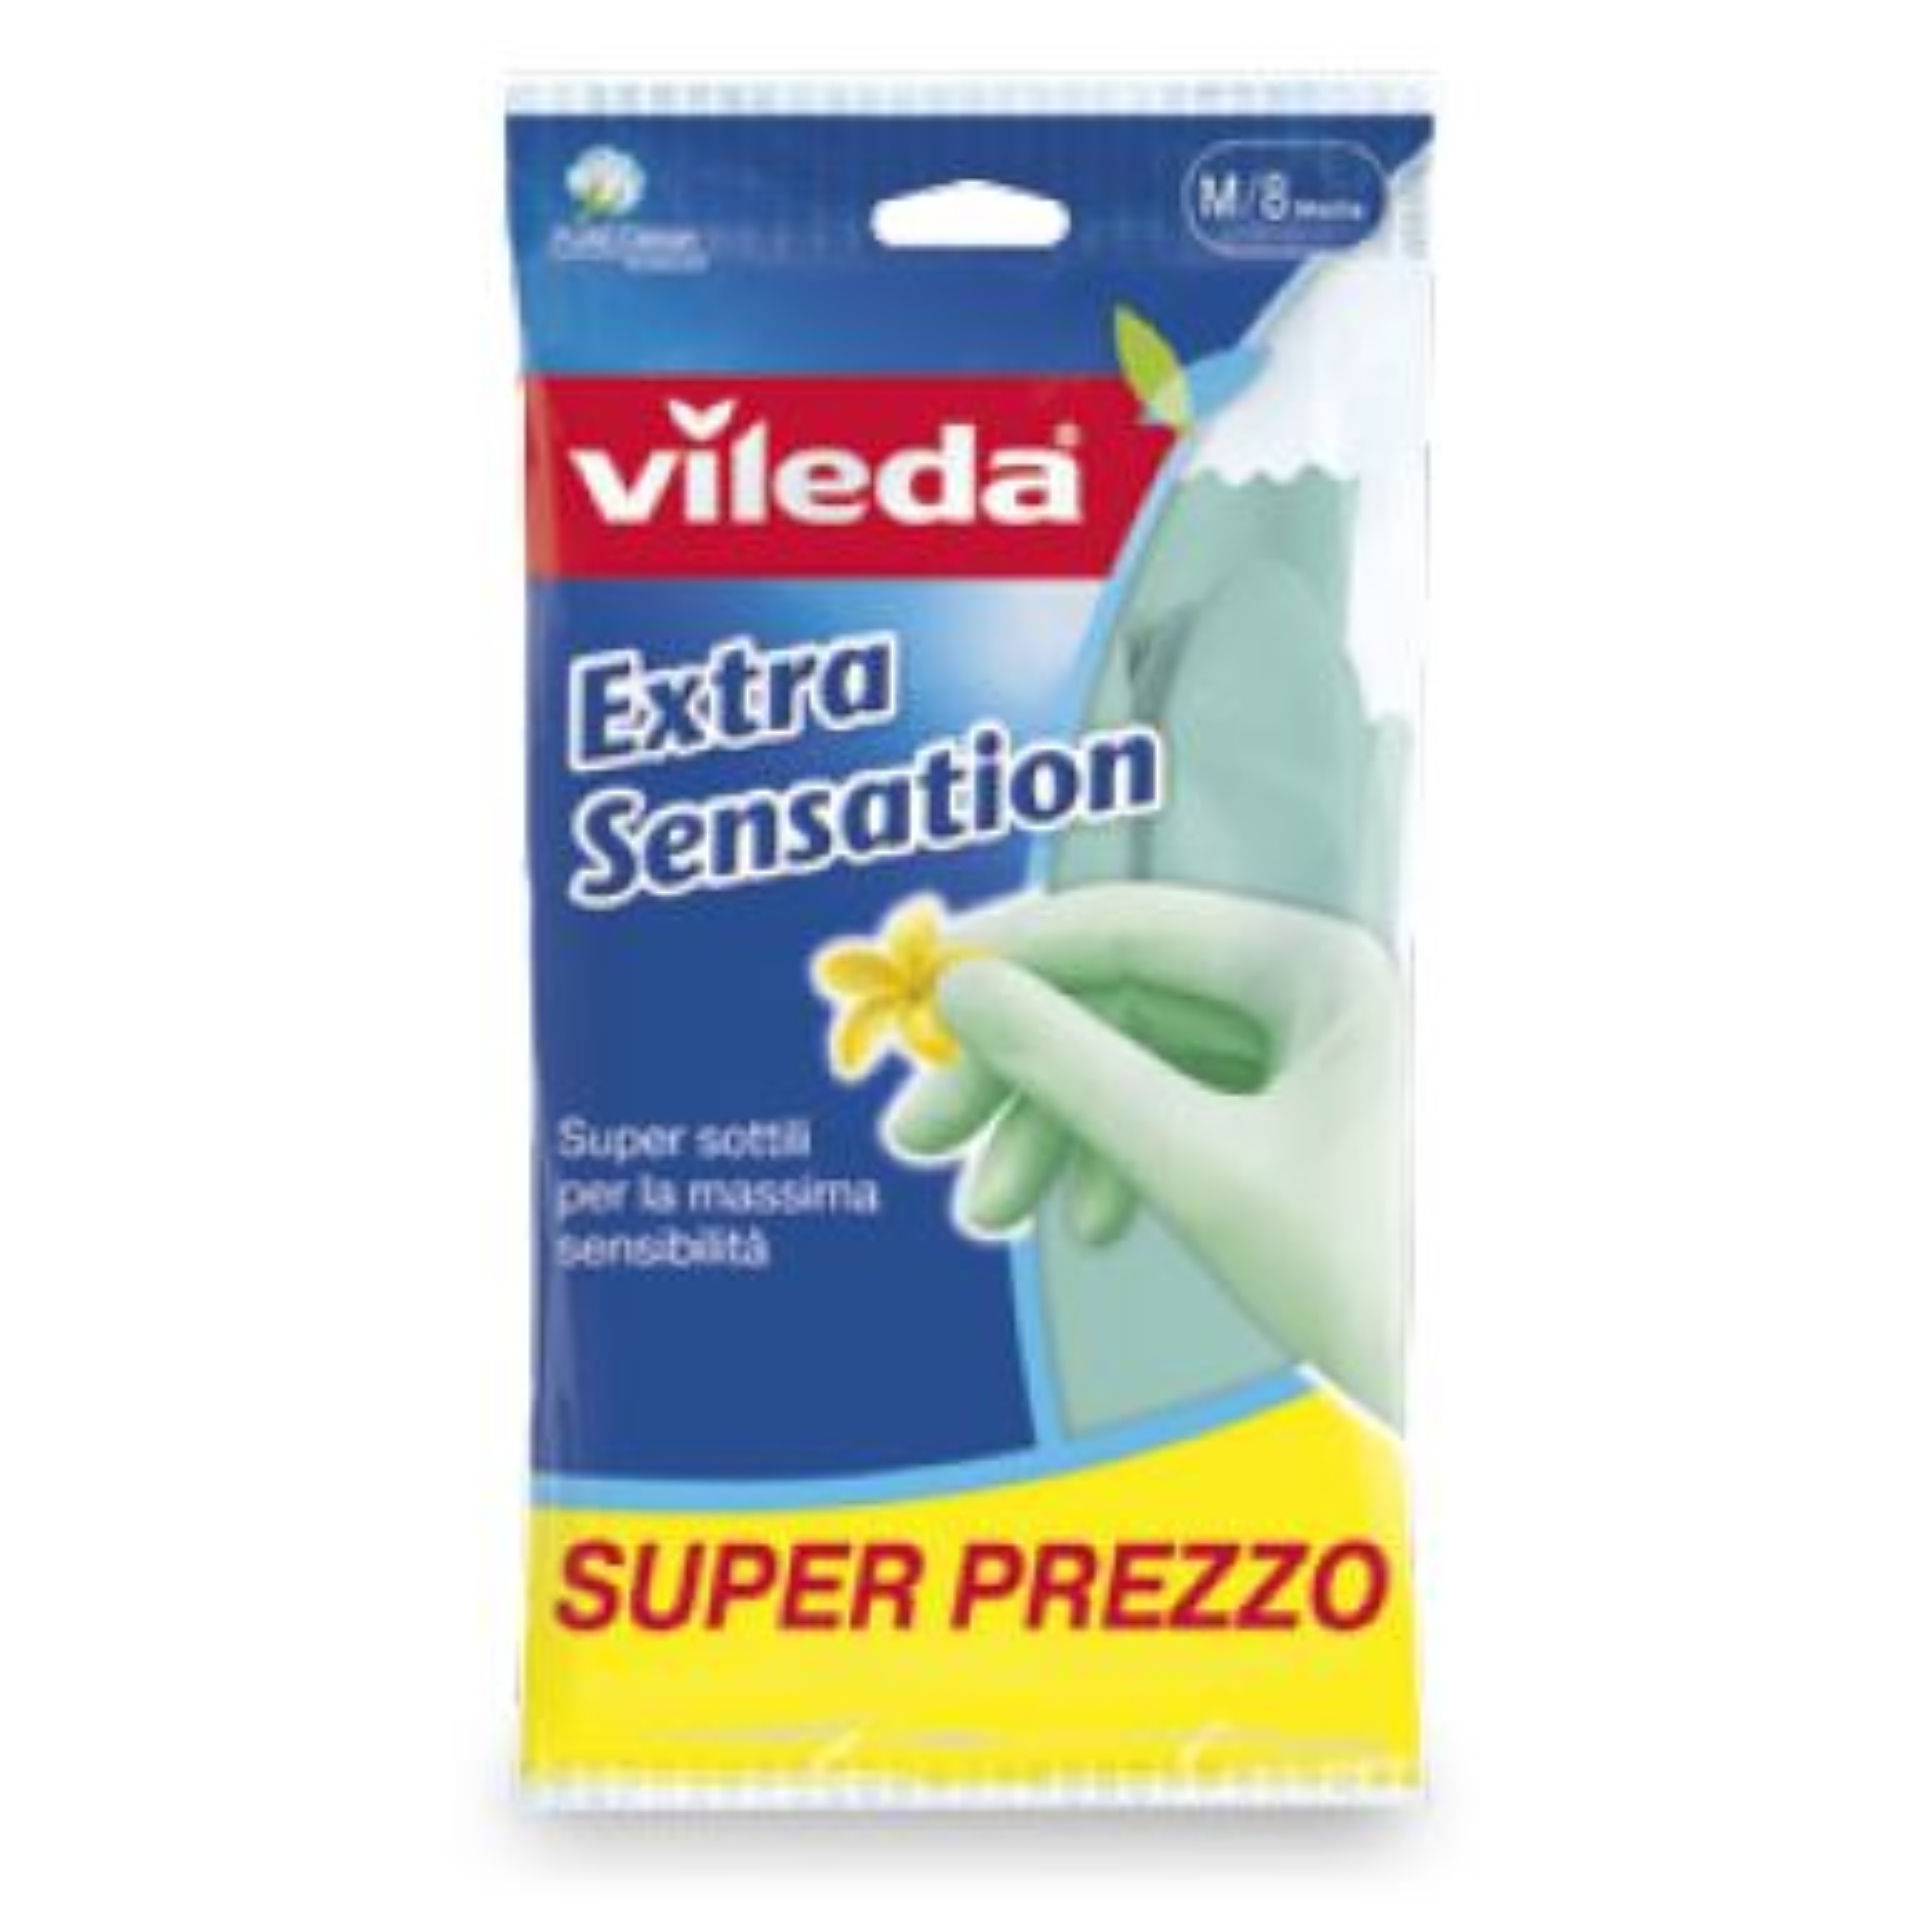 VILEDA GUANTI EXTRA SENSATION - MVileda